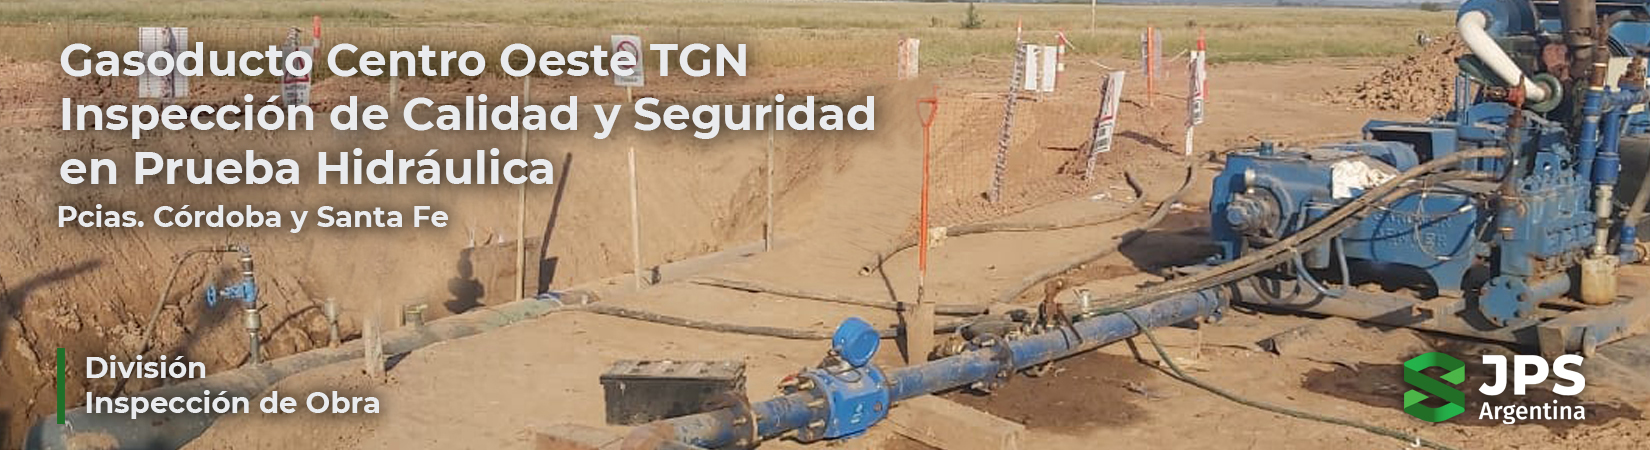 Gasoducto Centro Oeste: JPS inspecciona la Calidad y Seguridad de Pruebas Hidráulicas